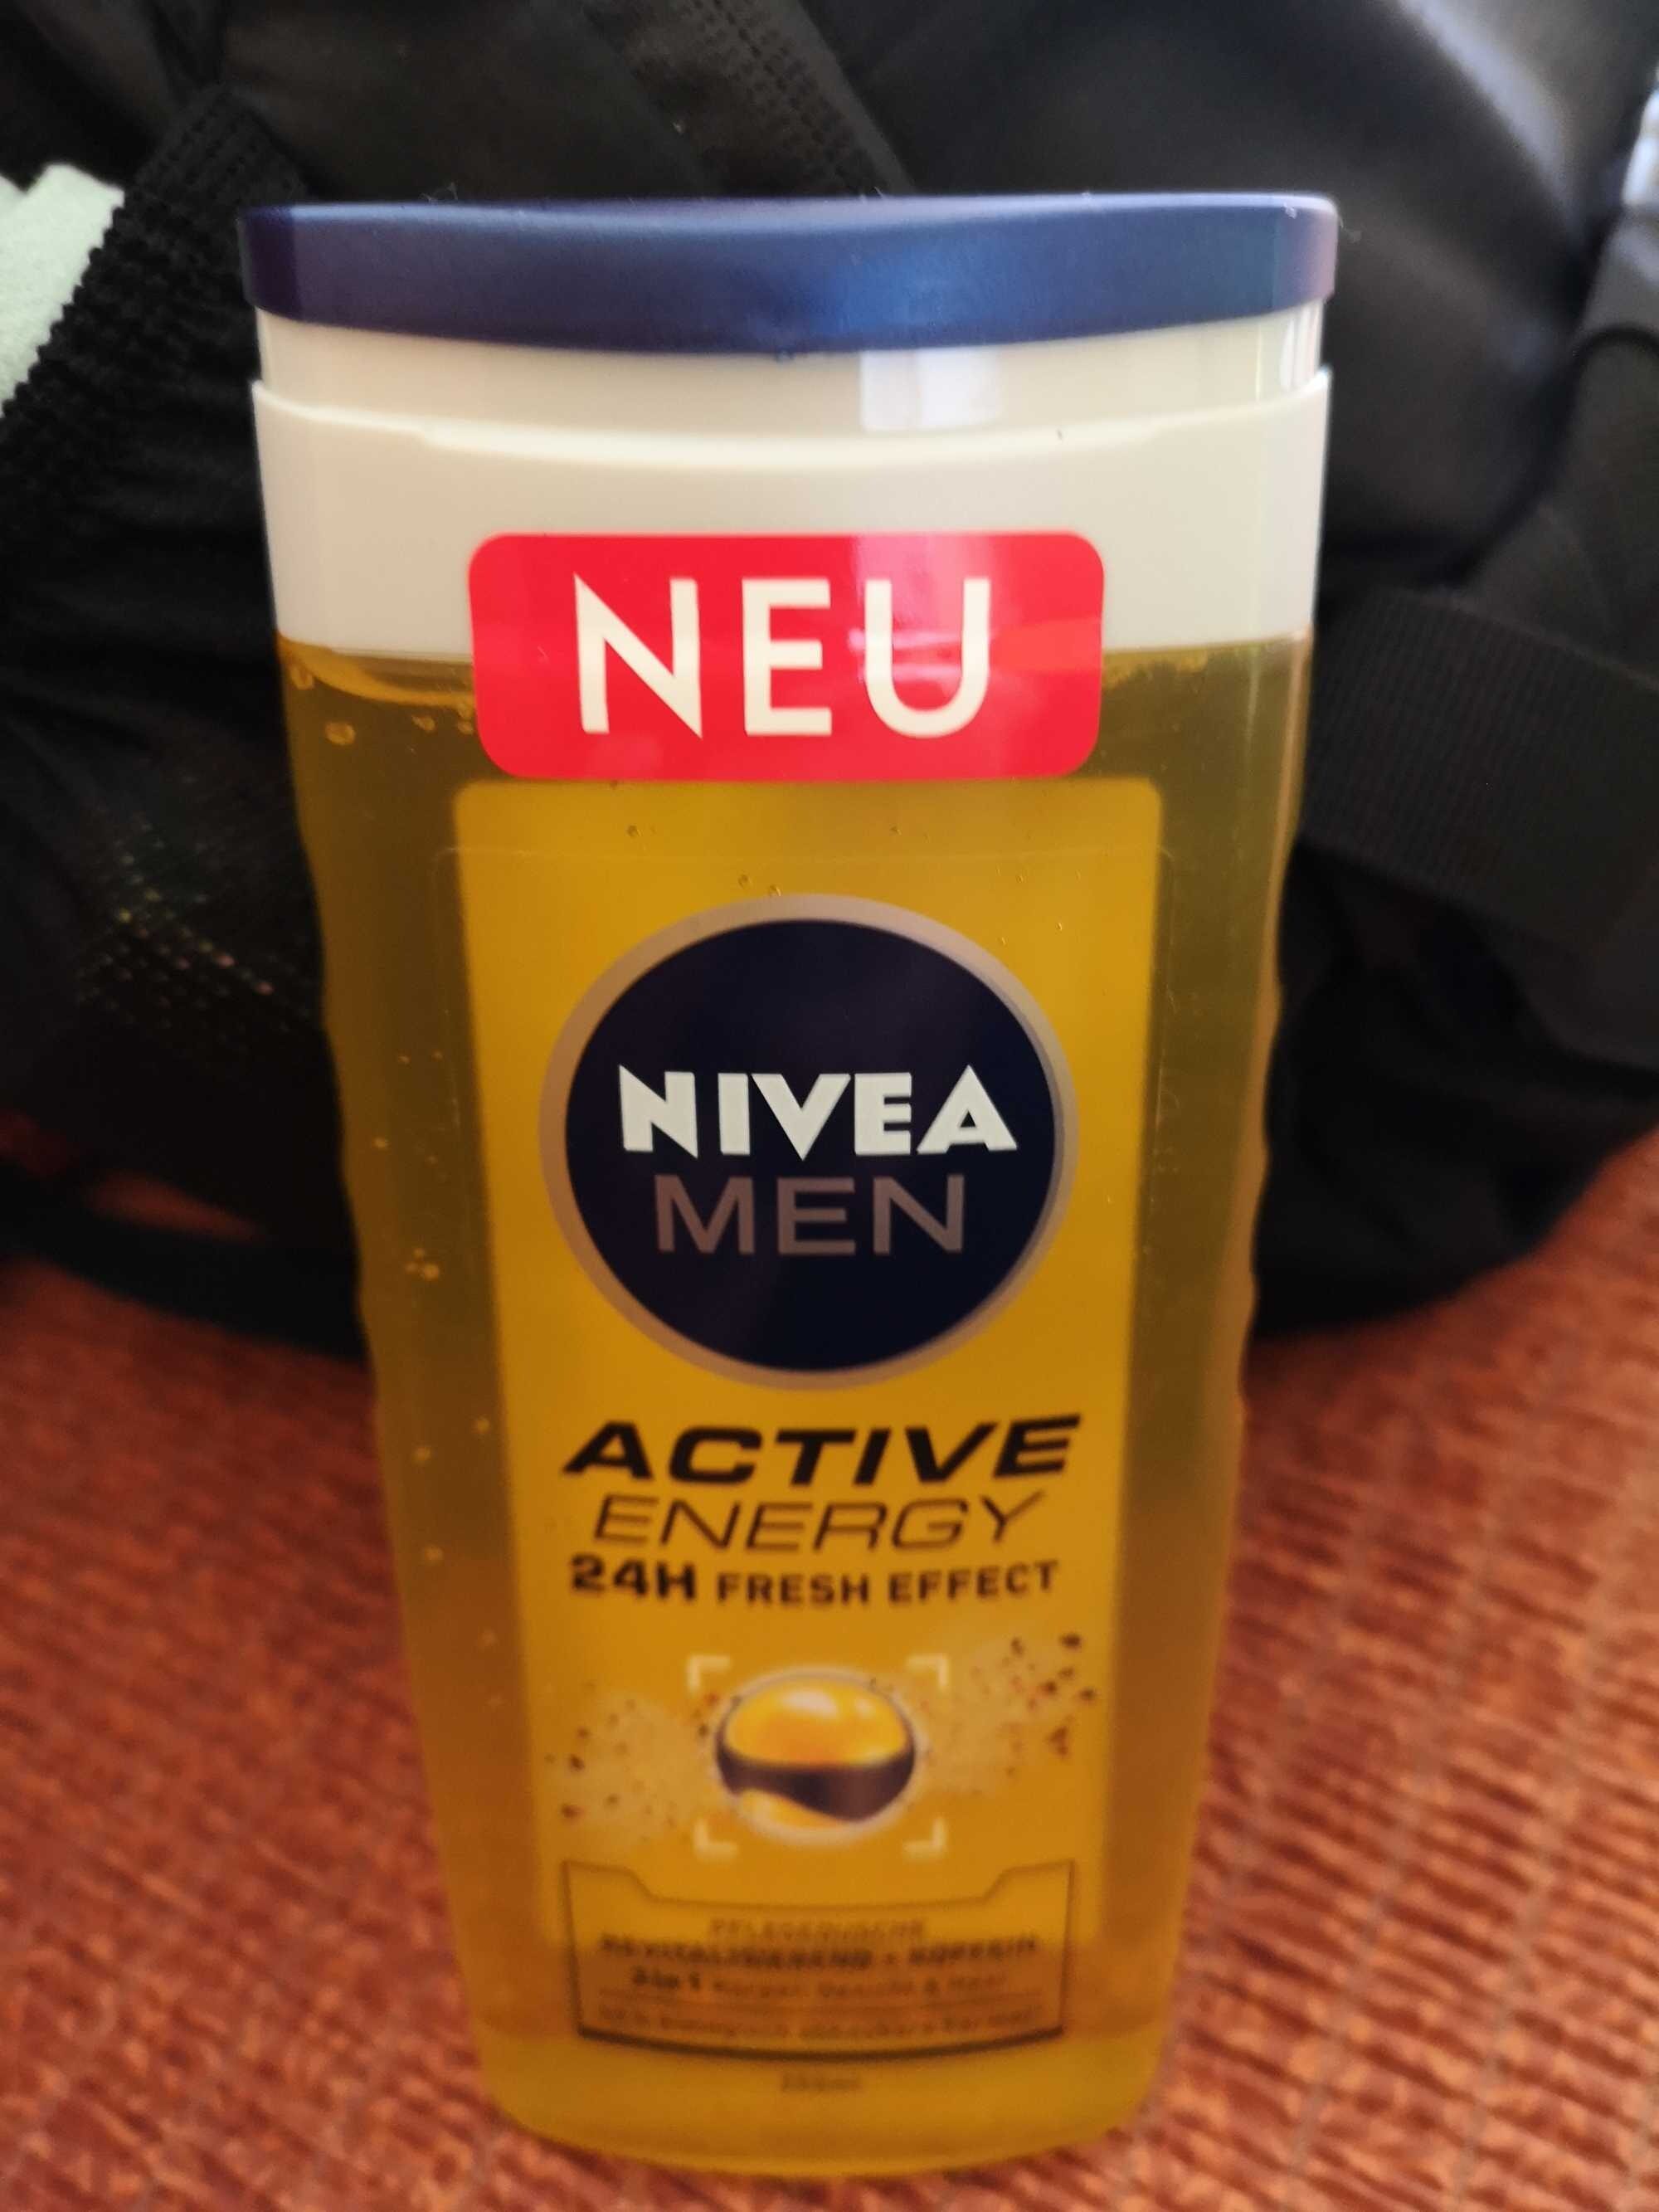 Nivea Men Active Energy 24h Fresh Effect - Продукт - de